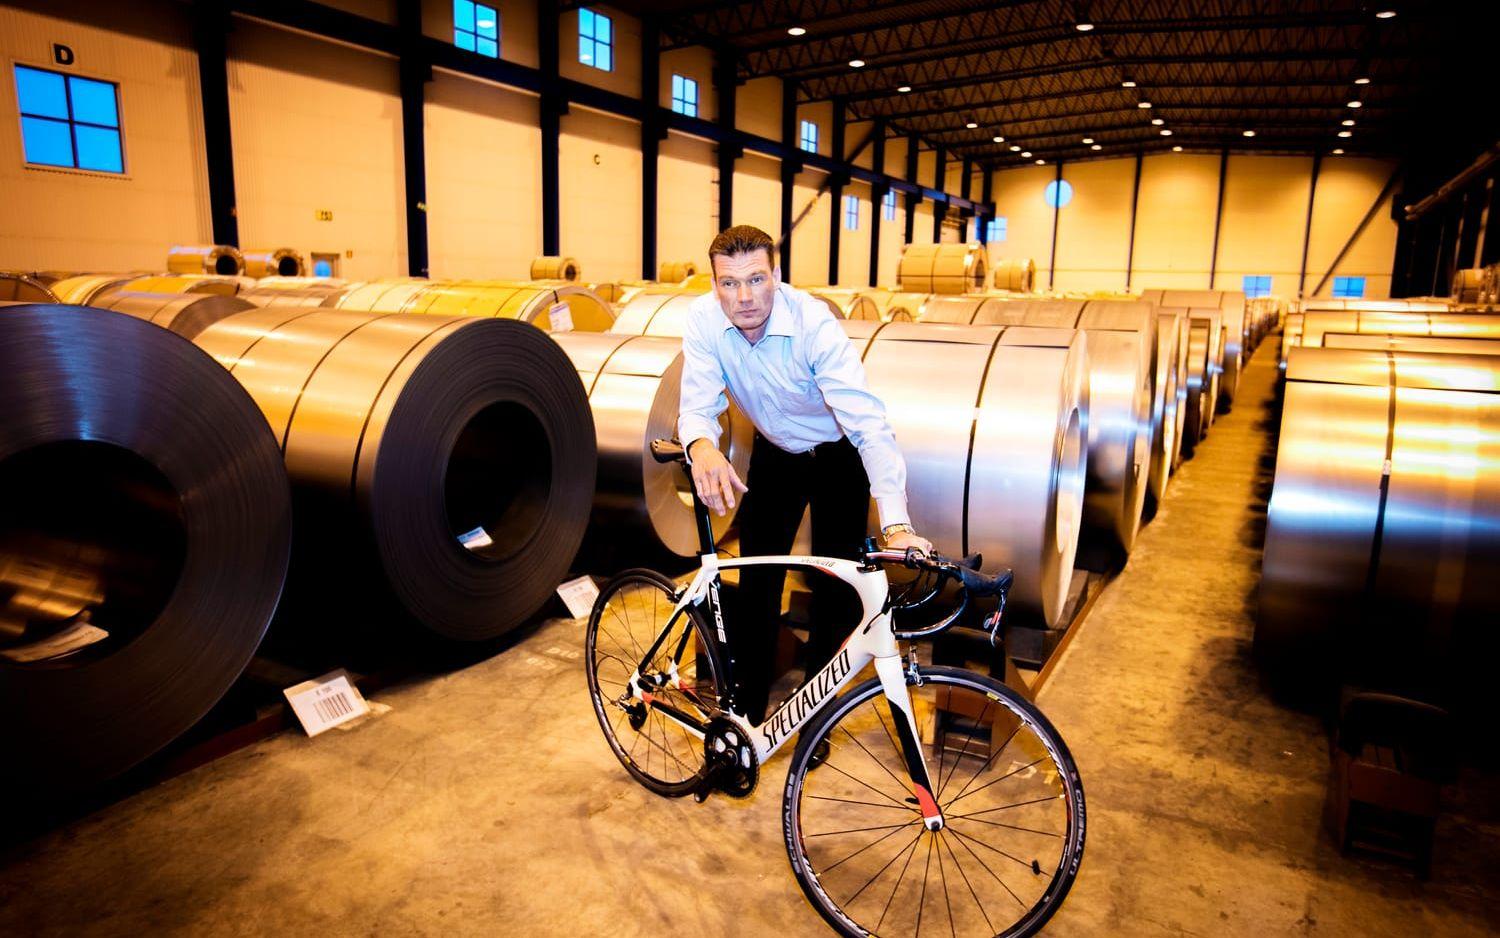 Målinriktad. Michael Andersson har nått stora framgångar som proffscyklist men också som affärsman inom stålkoncernen Tata Steel. Bild: Patrik Ljungman